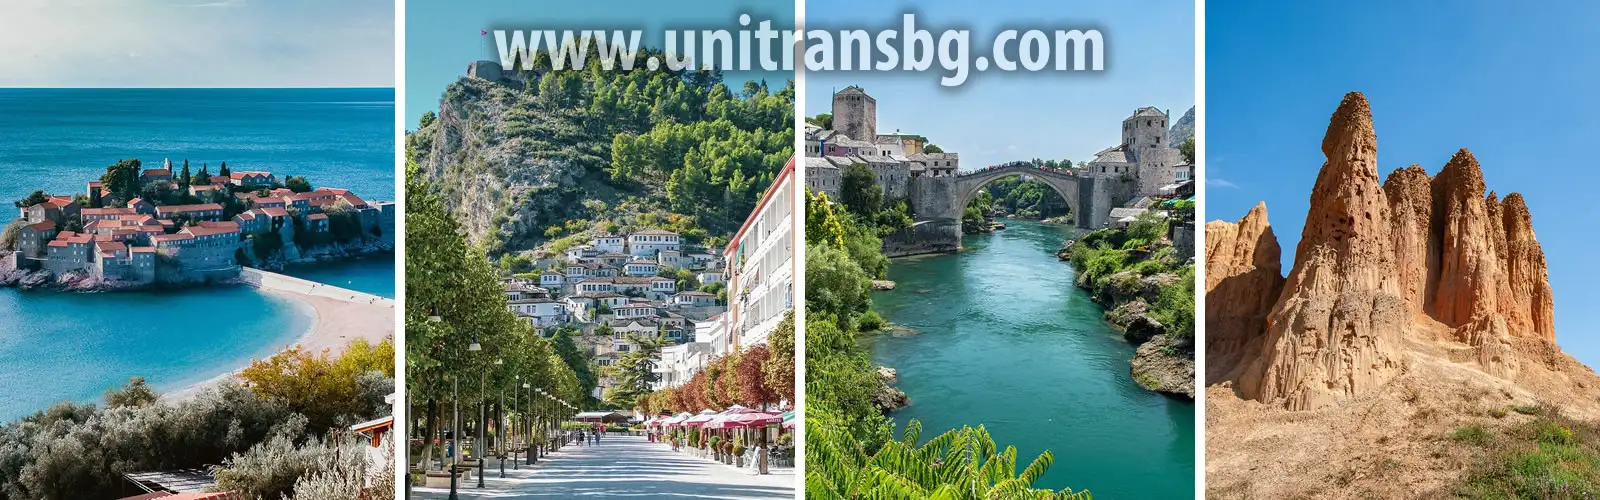 Самостоятелни екскурзии в България и по Балканите. Unitrans предлага транспорт до локации като Албания, Хърватия, Гърция и още. Ние сме тук за да направим вашата екскурзия едно страхотно изживяване.